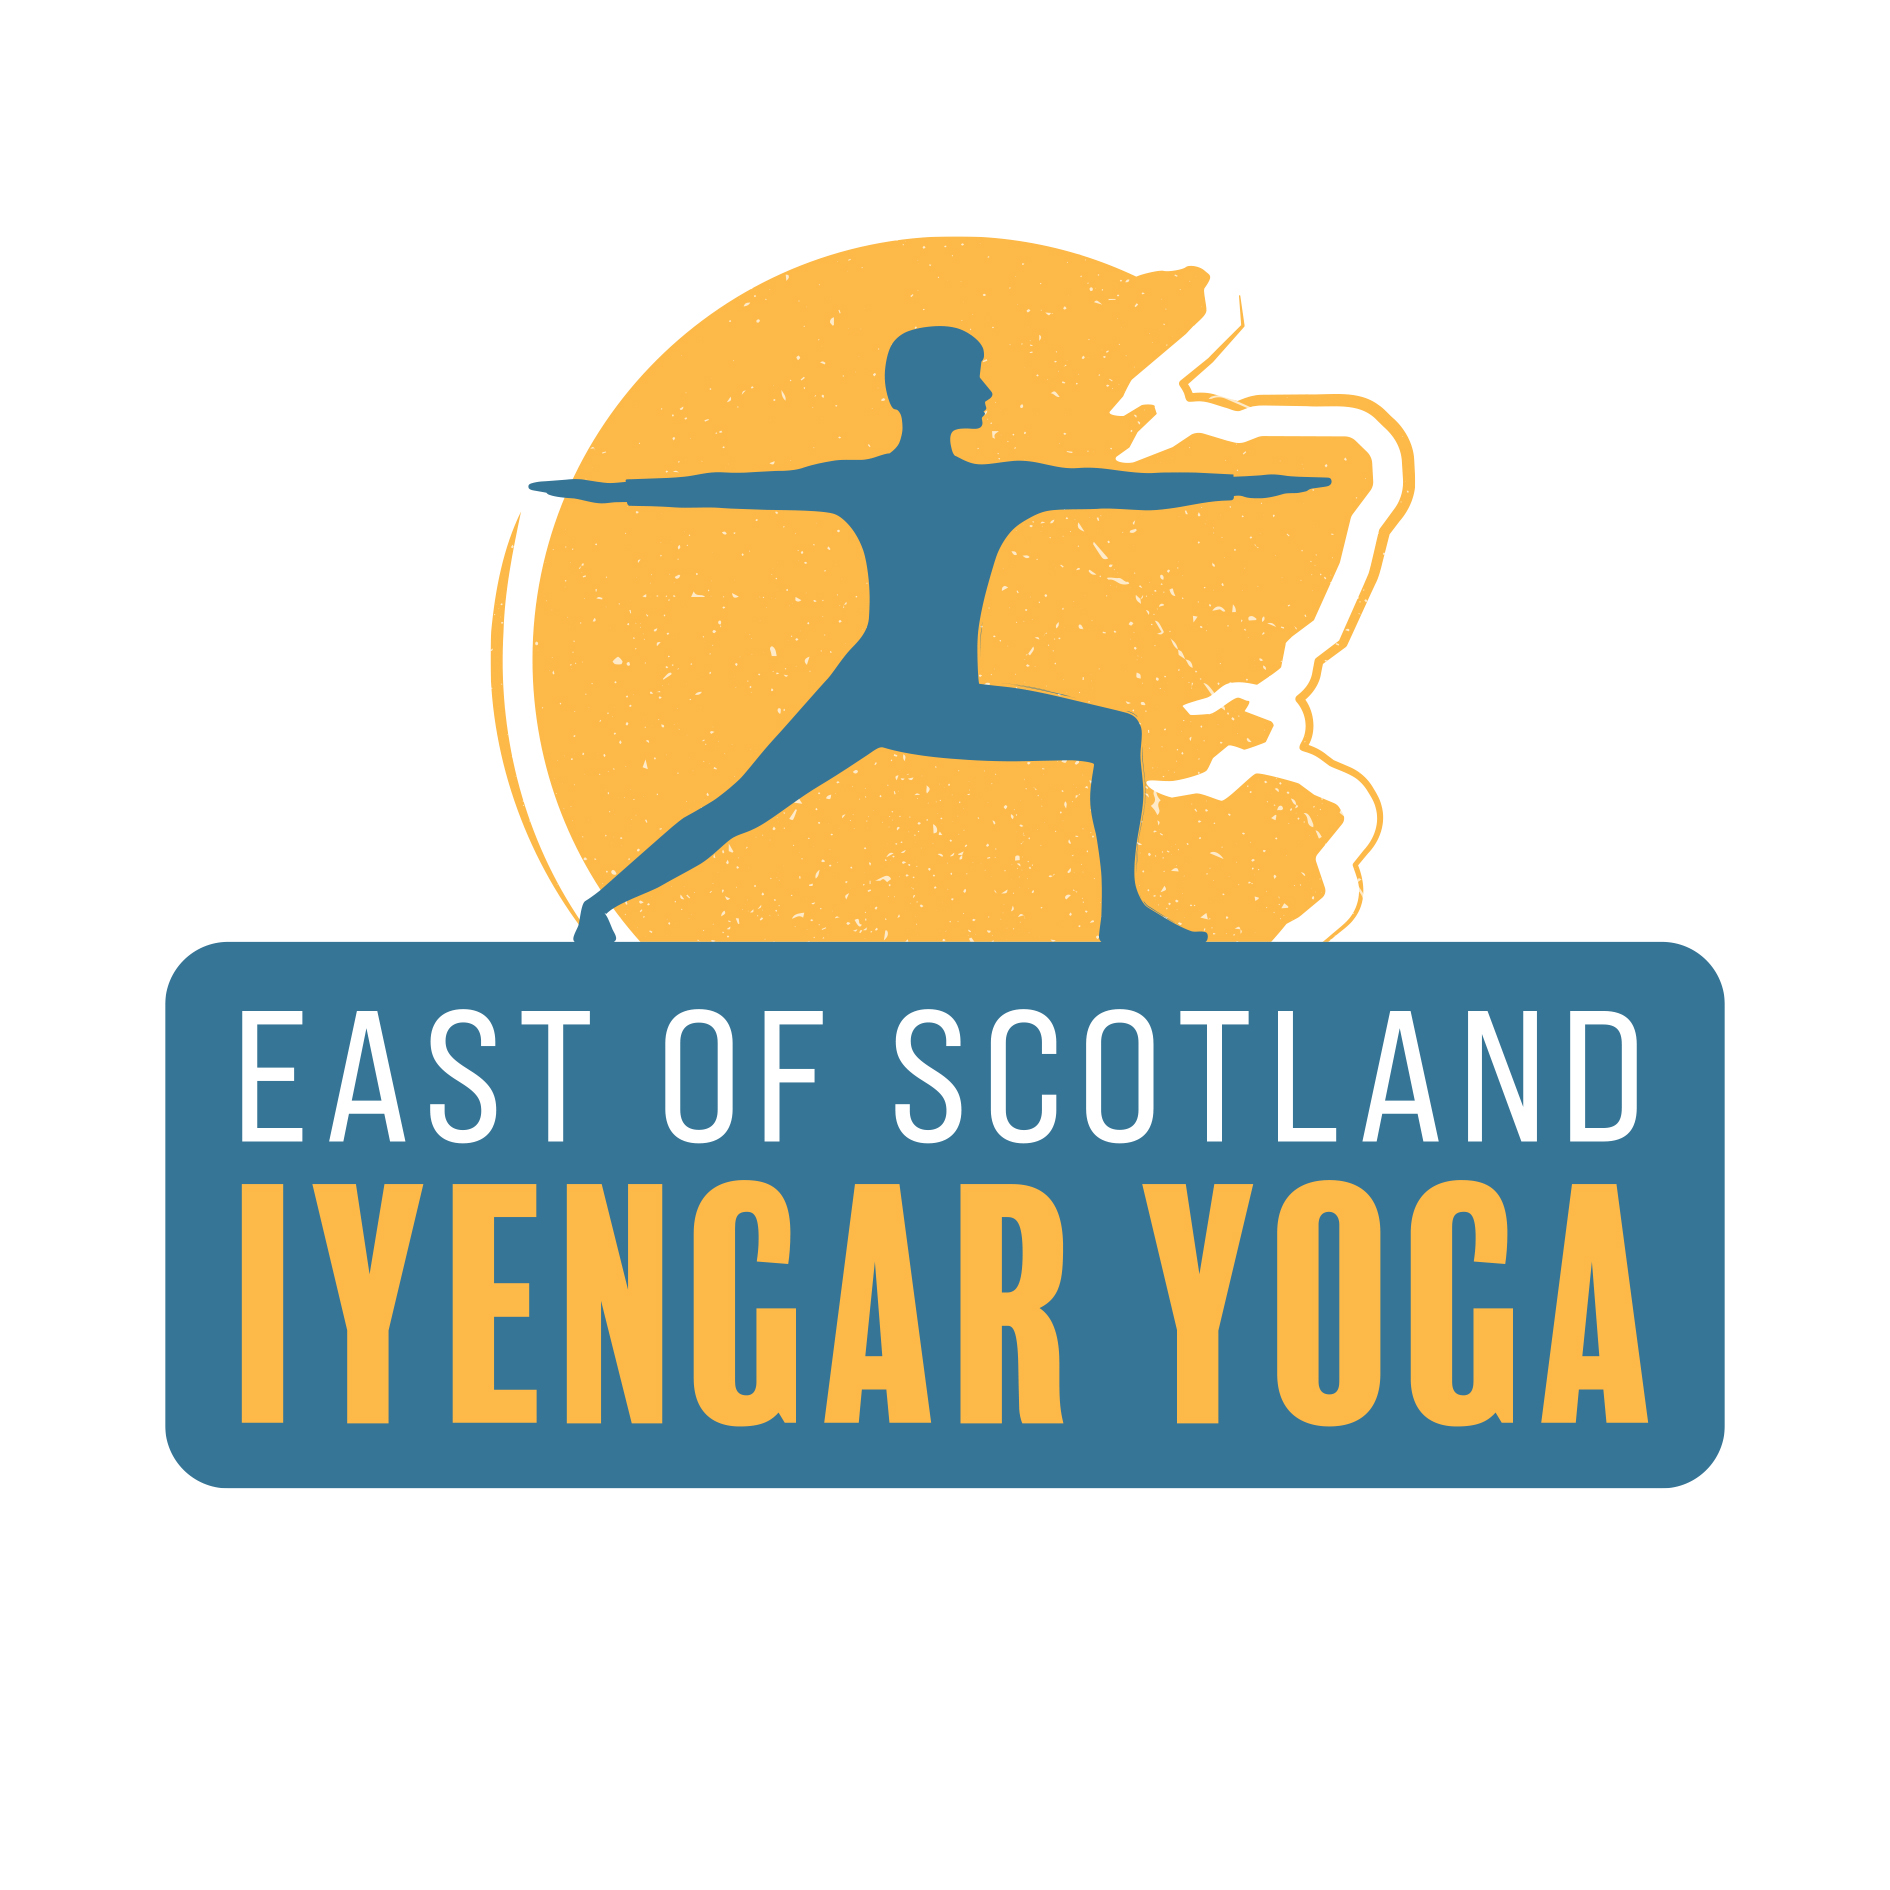 East of Scotland Iyengar Yoga member group logo.